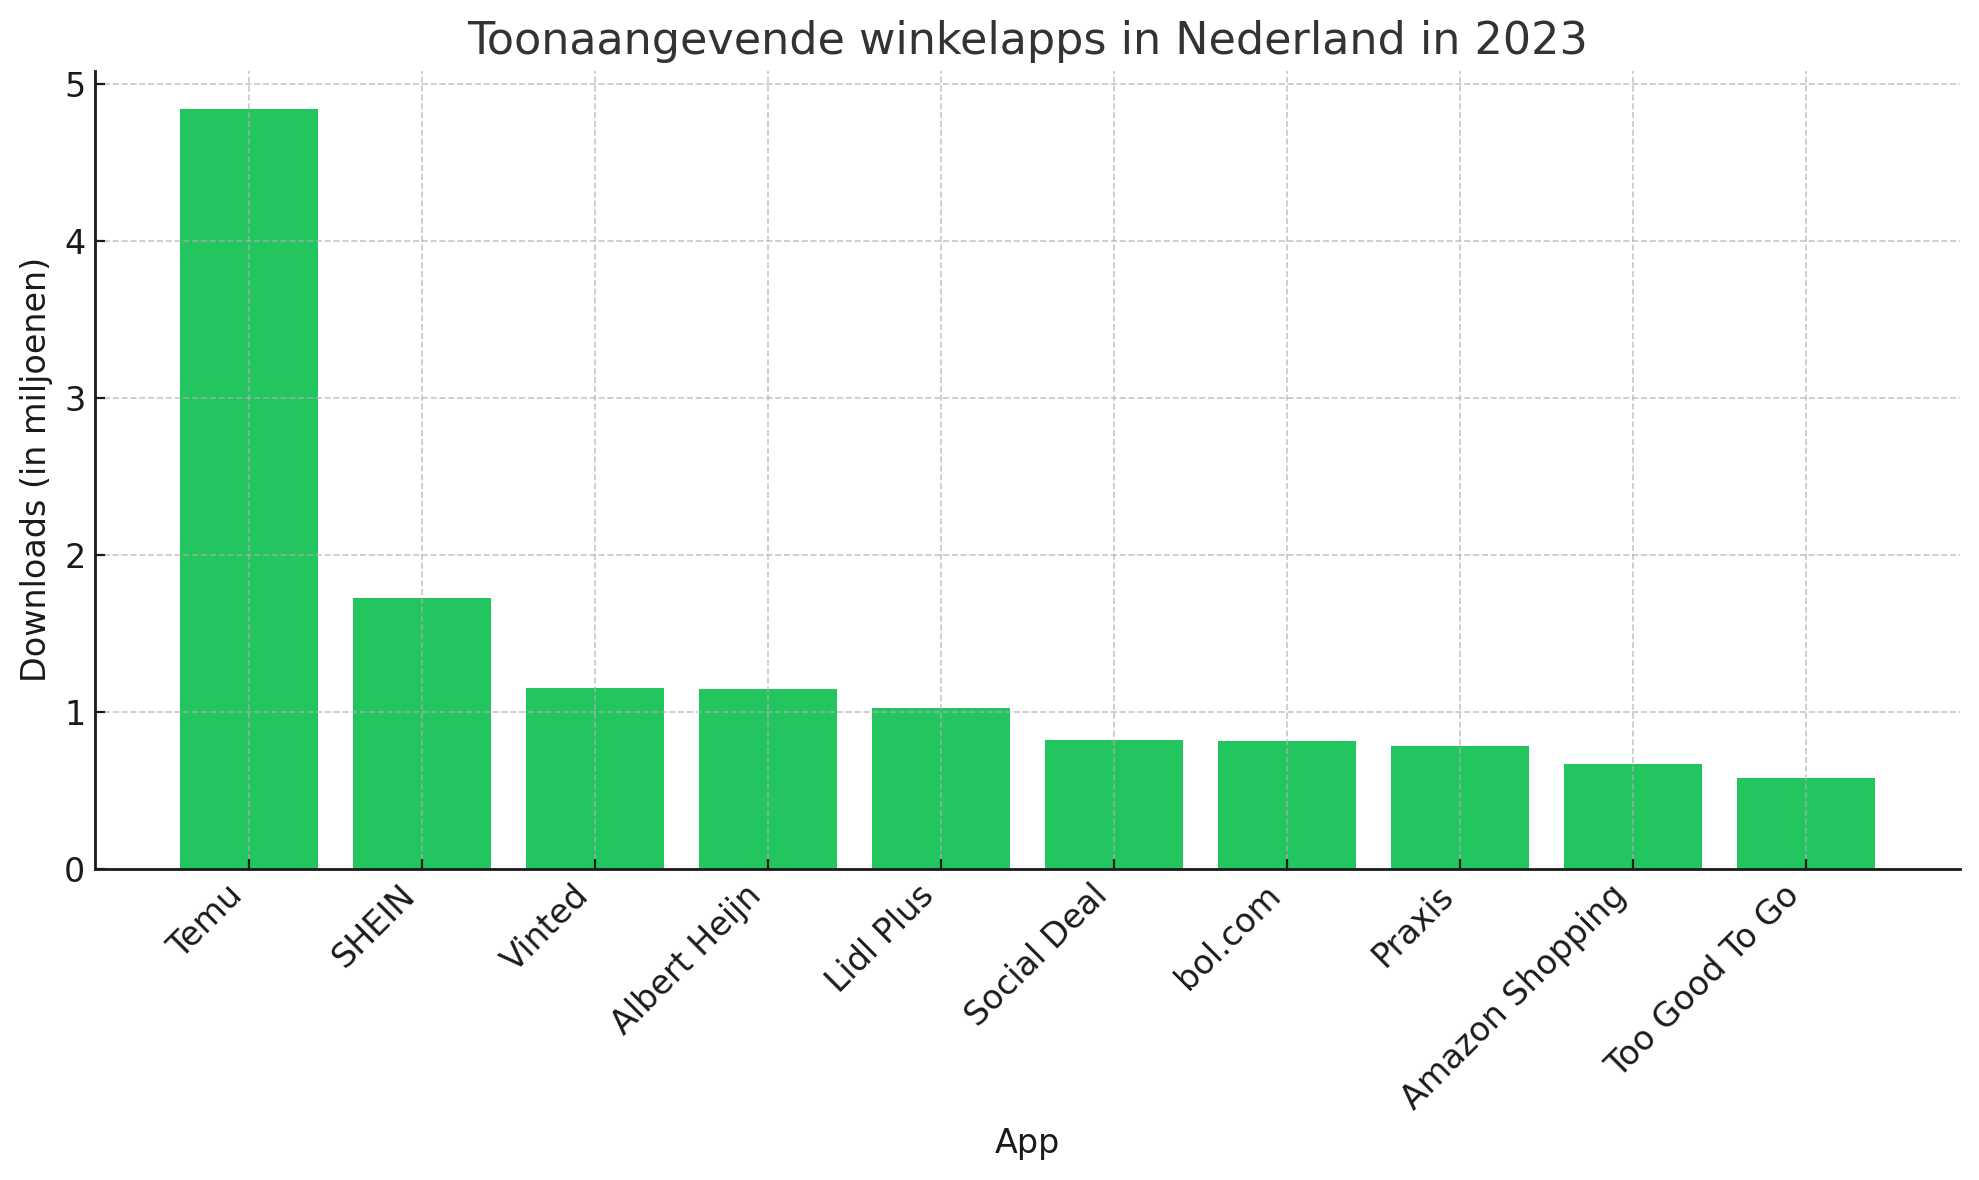 Toonaangevende winkelapps in Nederland in 2023